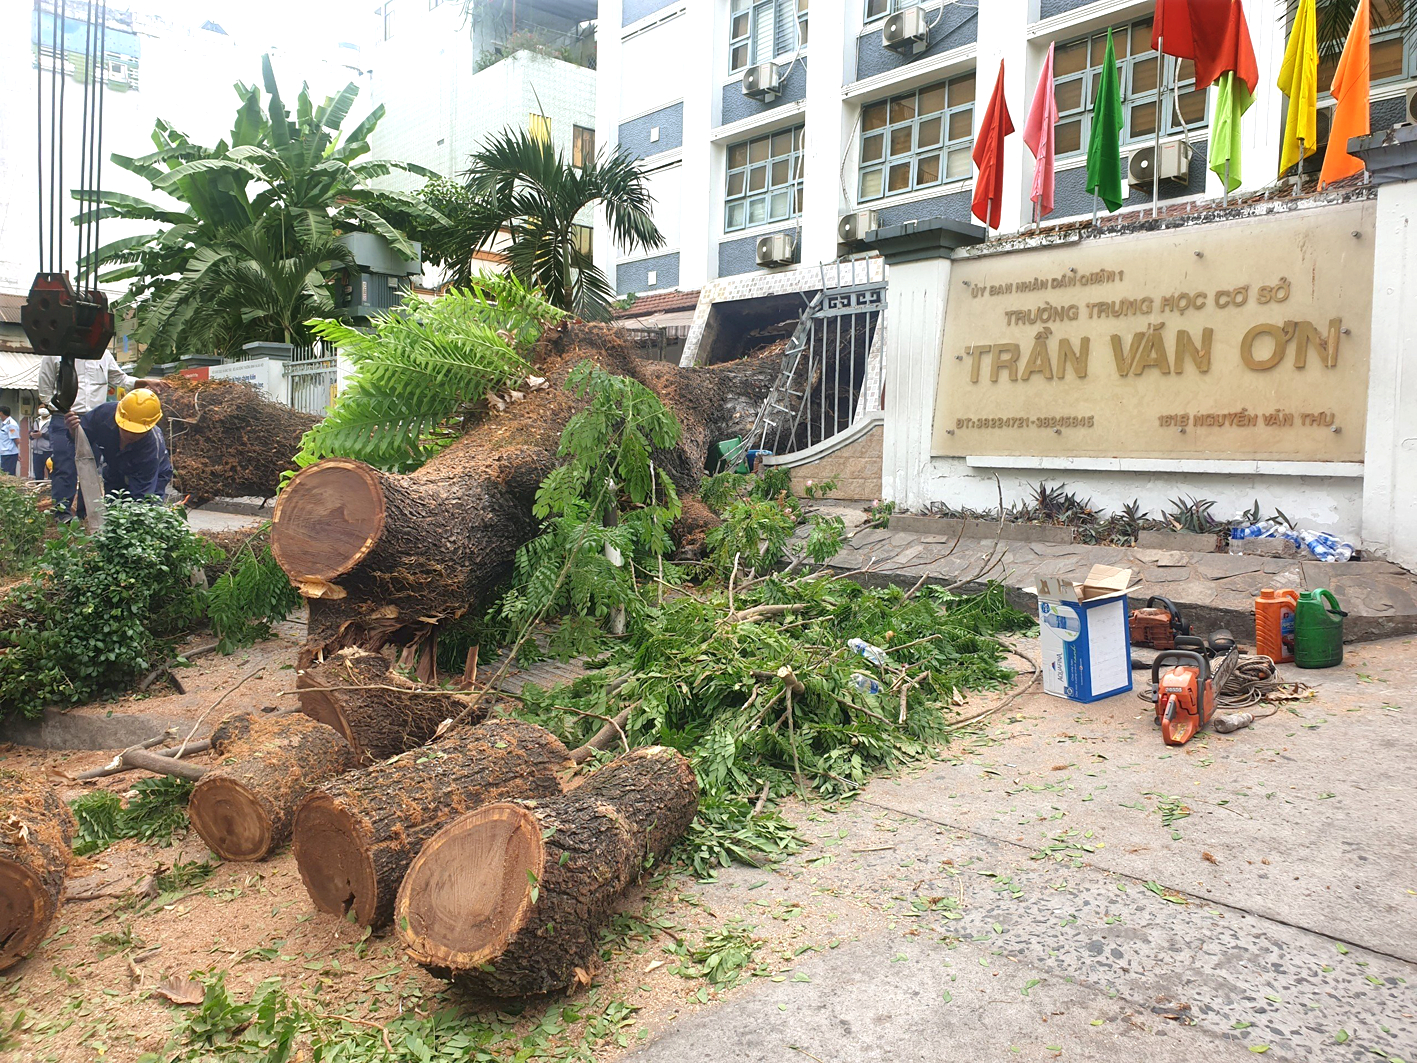 Cây xanh trong khuôn viên Trường THCS Trần Văn Ơn (quận 1, TPHCM) bị ngã đổ sáng 3/4 - ẢNH: P.T.